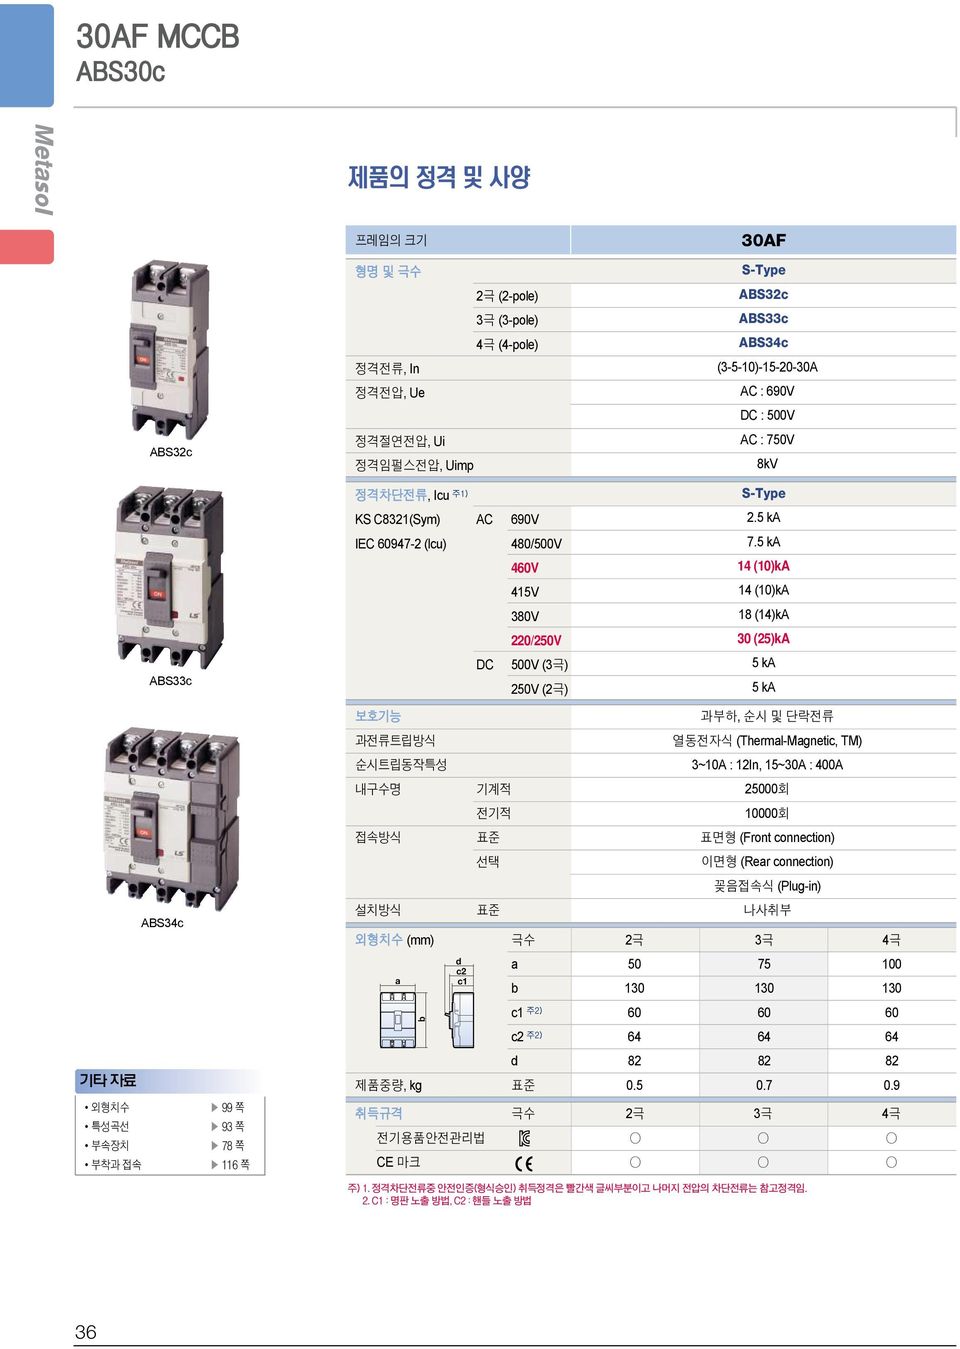 5 ka 460V 14 (10)kA 415V 14 (10)kA 380V 18 (14)kA 220/250V 30 (25)kA ABS33c DC 500V () 250V (2극) 5 ka 5 ka 보호기능 과부하, 순시및단락전류 과전류트립방식 열동전자식 (ThermlMgnetic, TM) 순시트립동작특성 3~10A : 12In, 15~30A : 400A